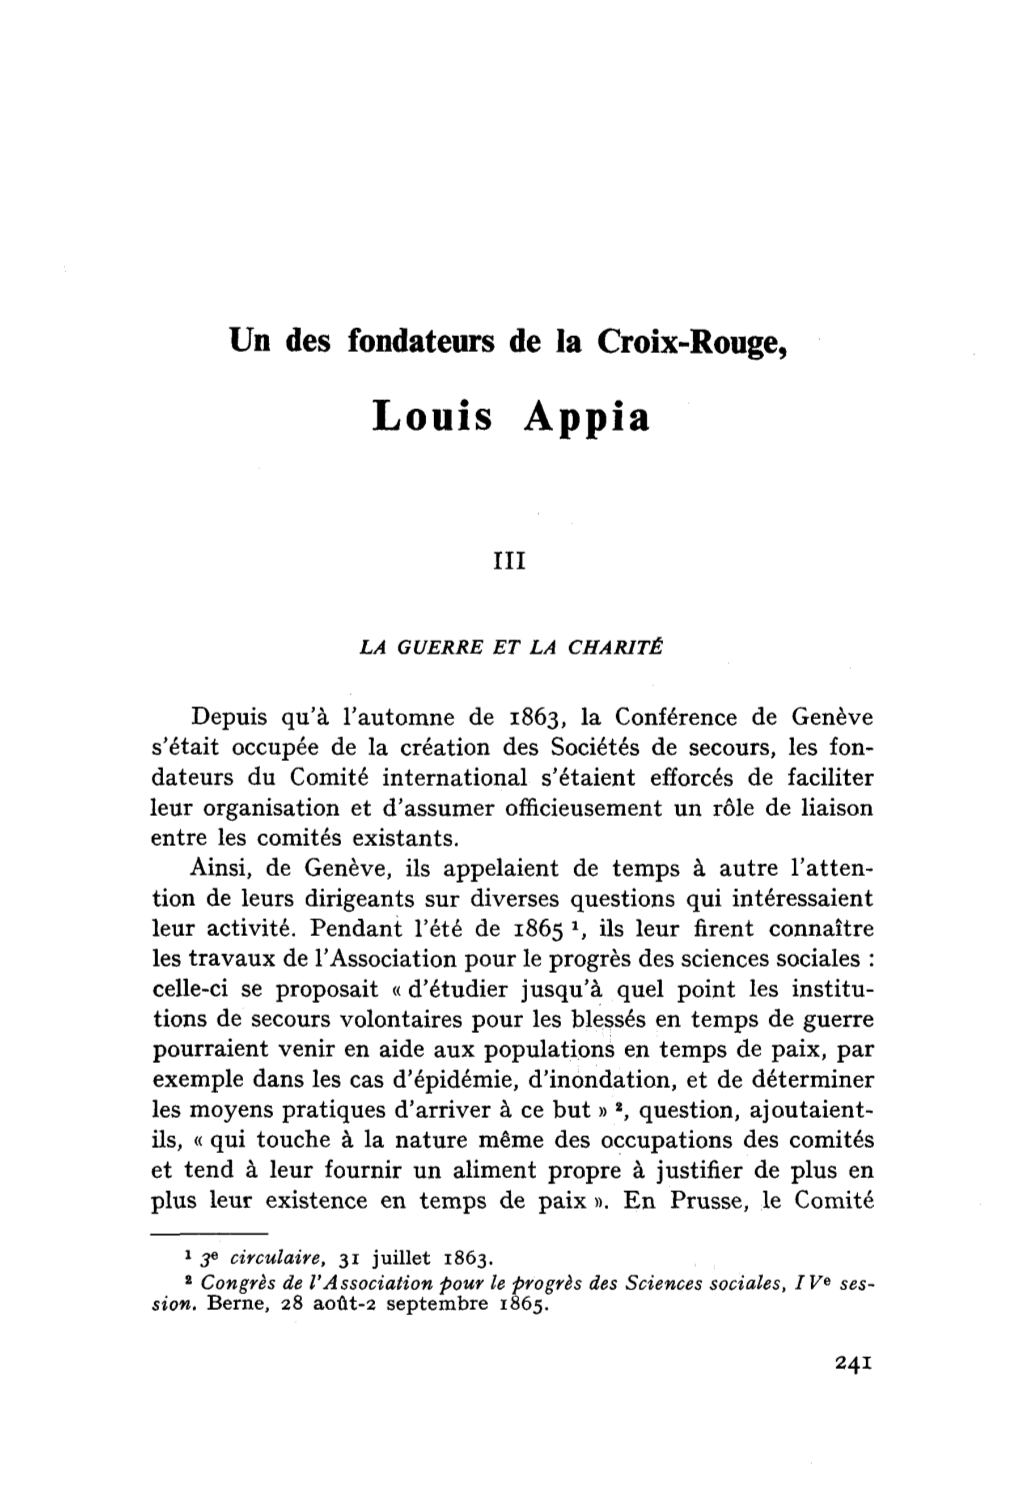 Un Des Fondateurs De La Croix-Rouge, Louis Appia: (III)